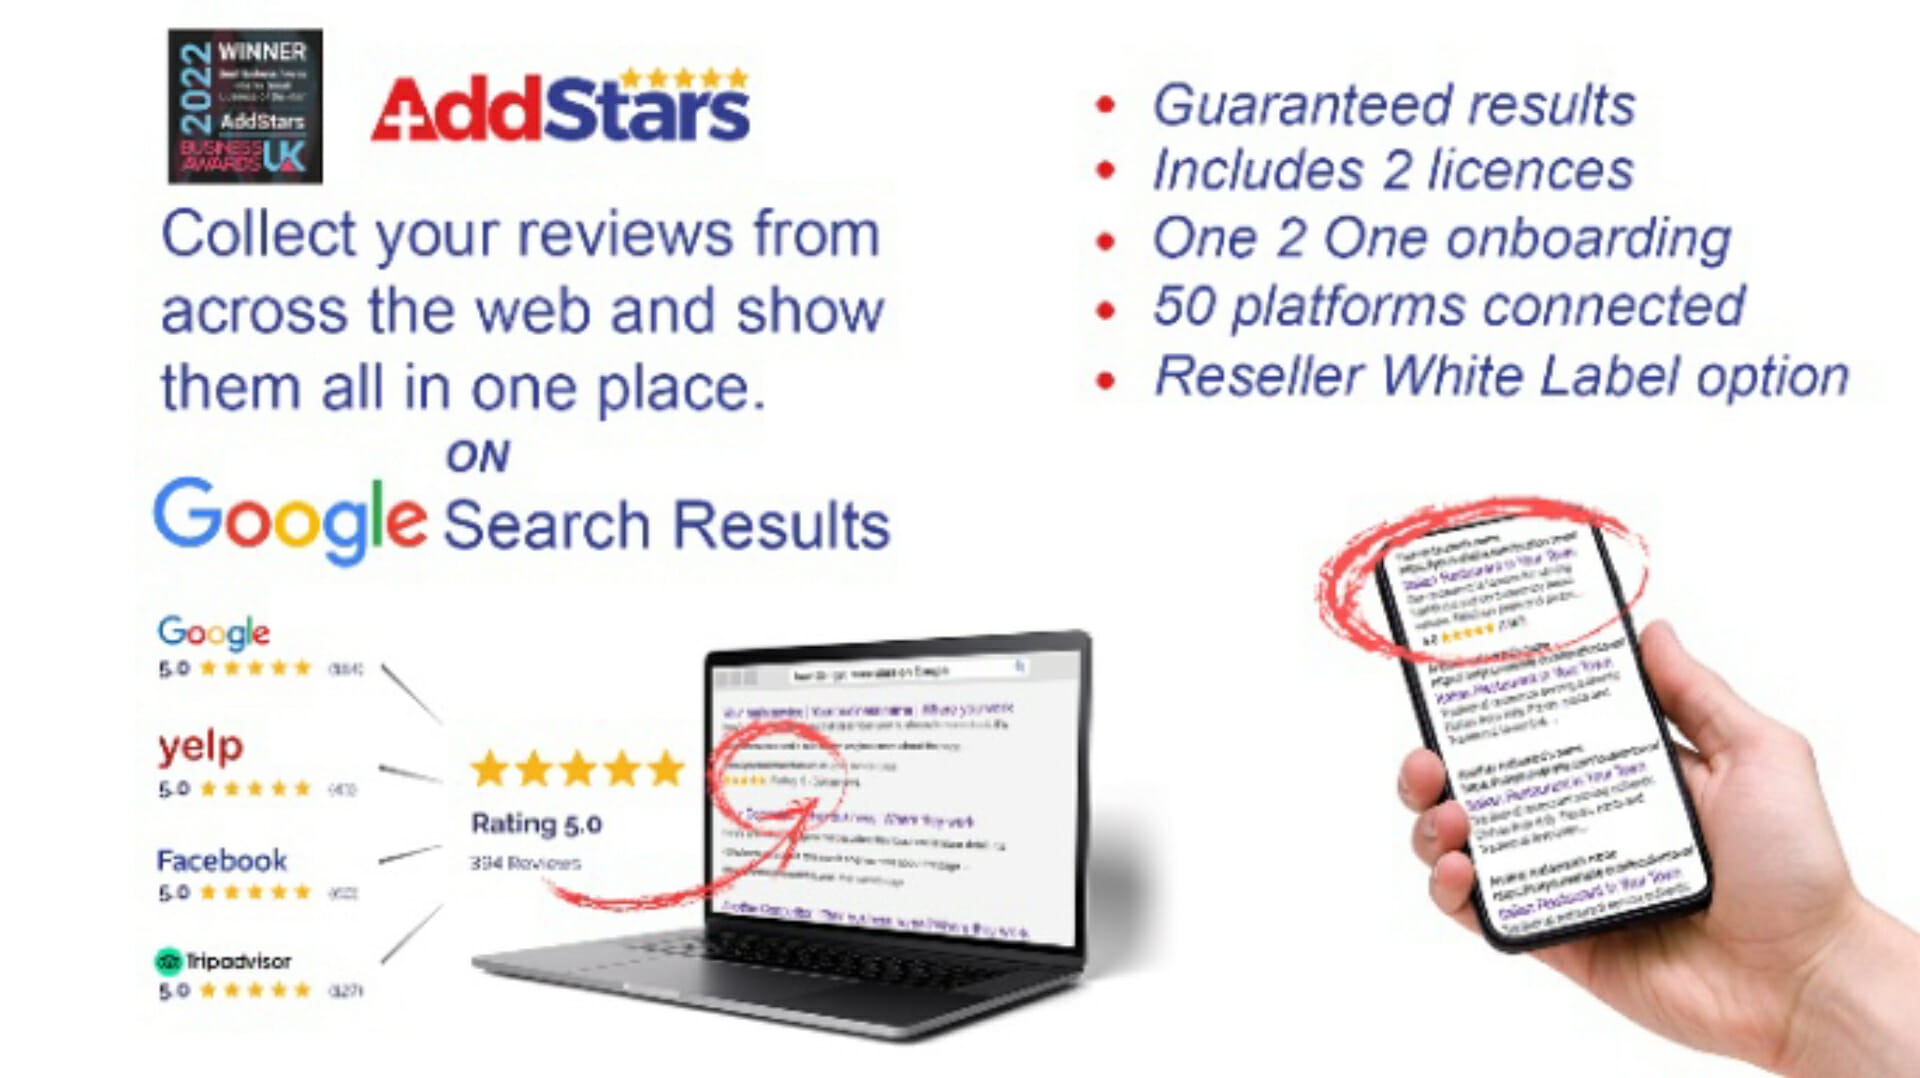 Lifetime Deal to AddStars: AddStars LTD for $59